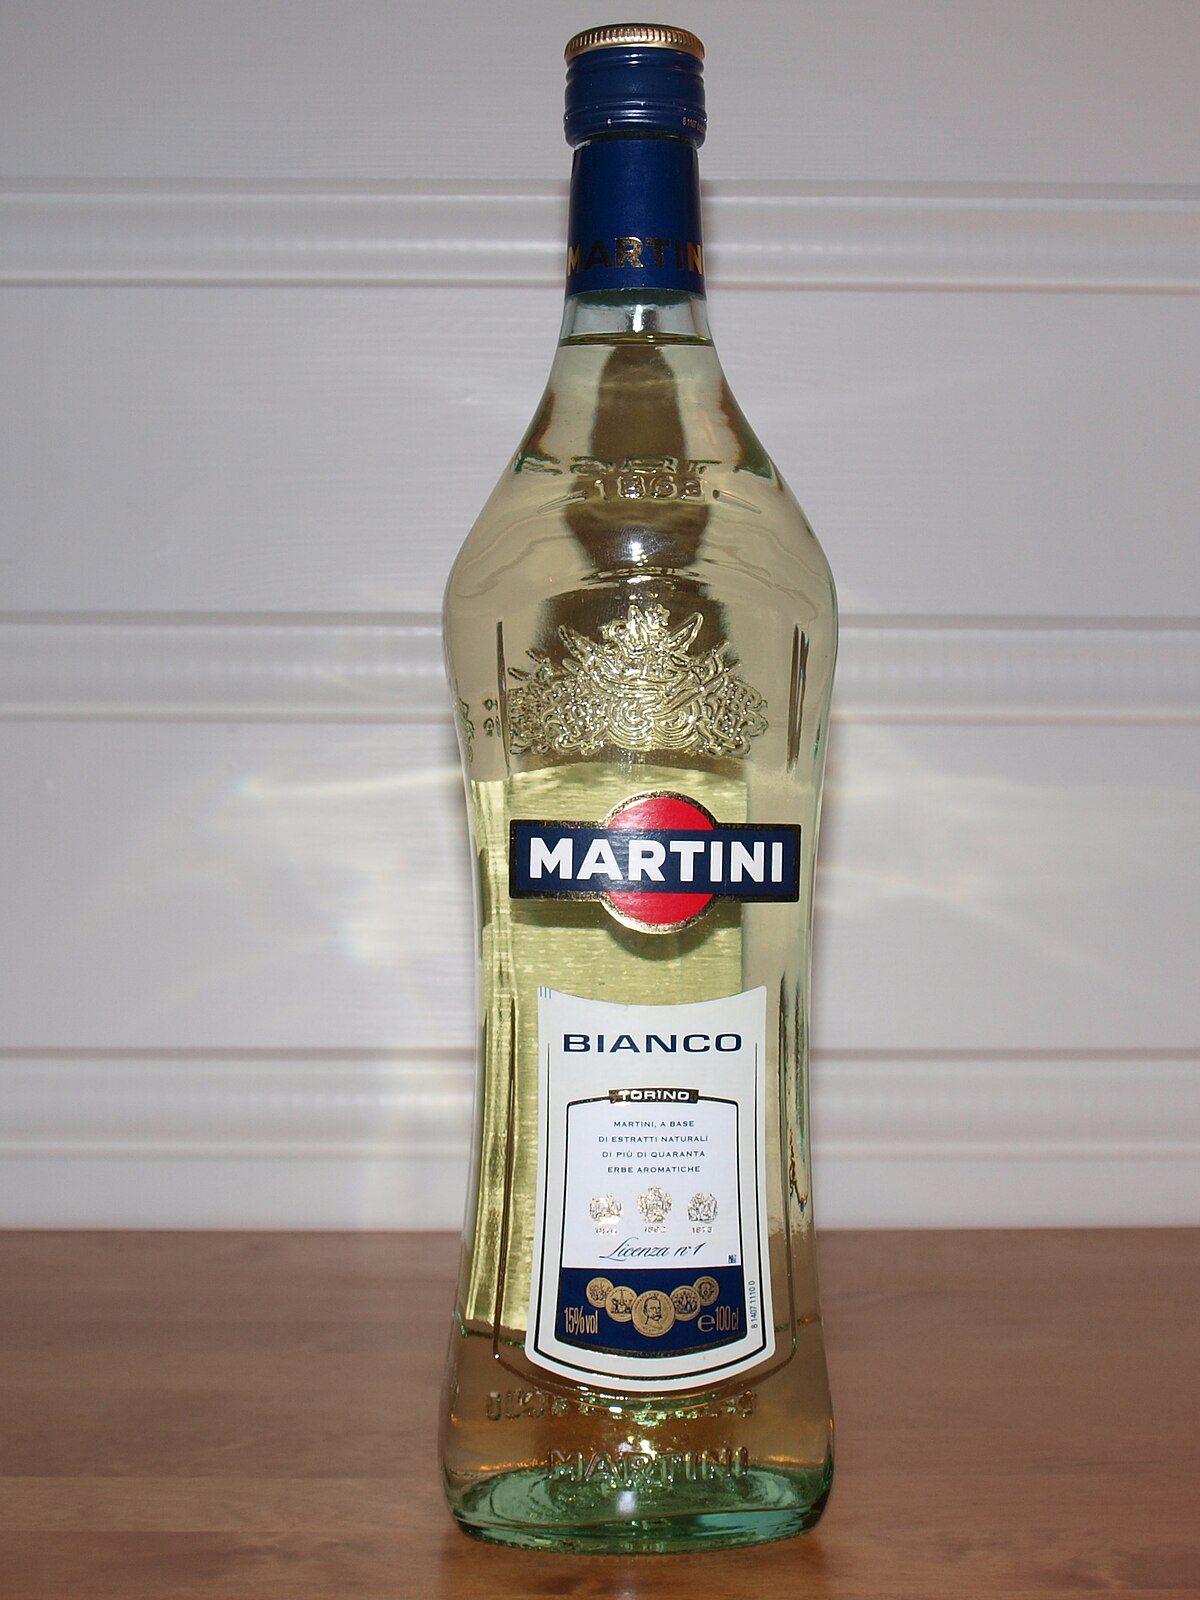 File:Martini Bianco.JPG - Wikipedia